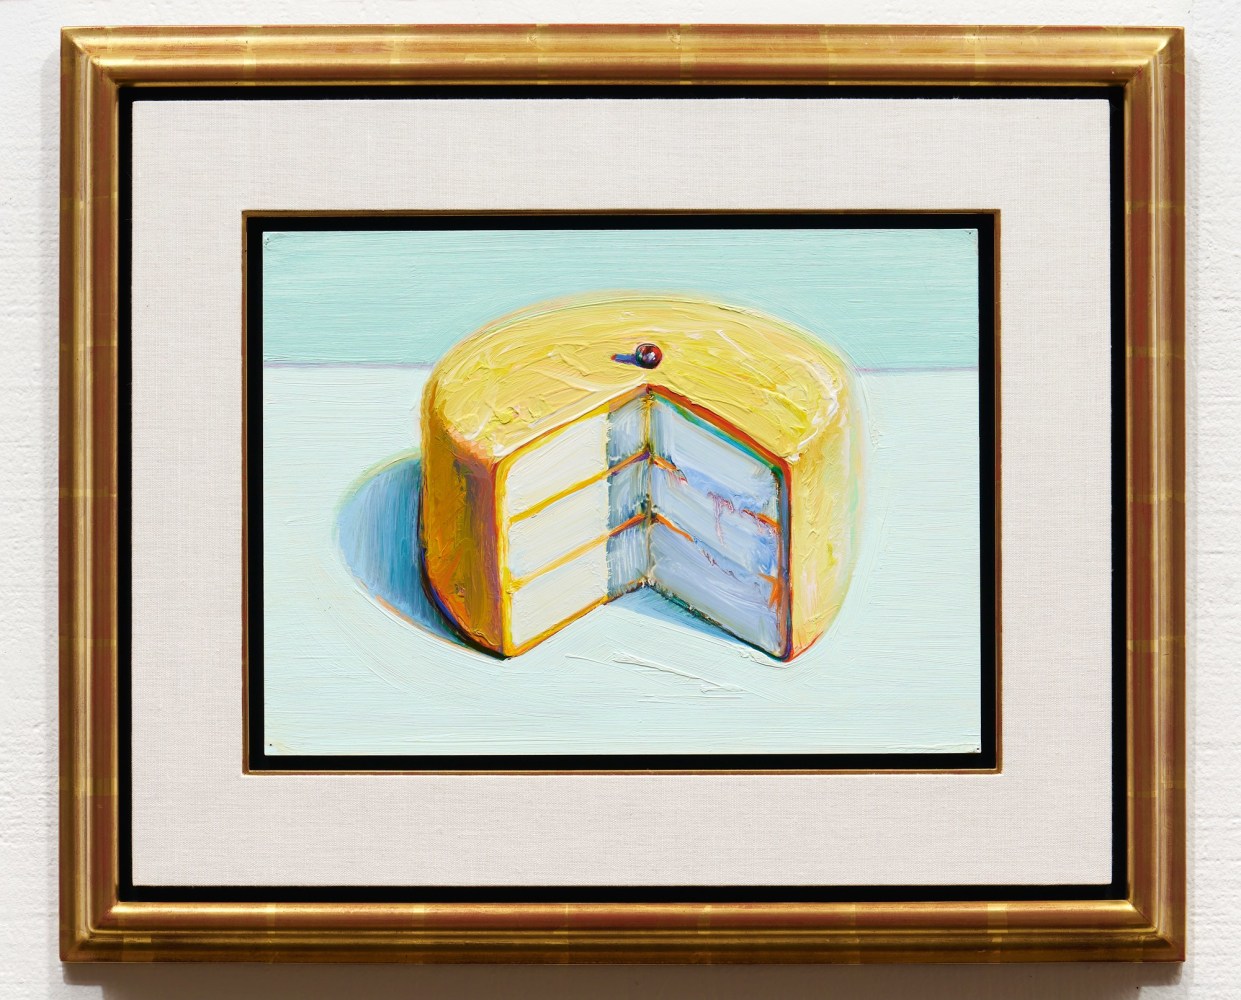 WT_Lemon Cake c.1970 frame.jpg